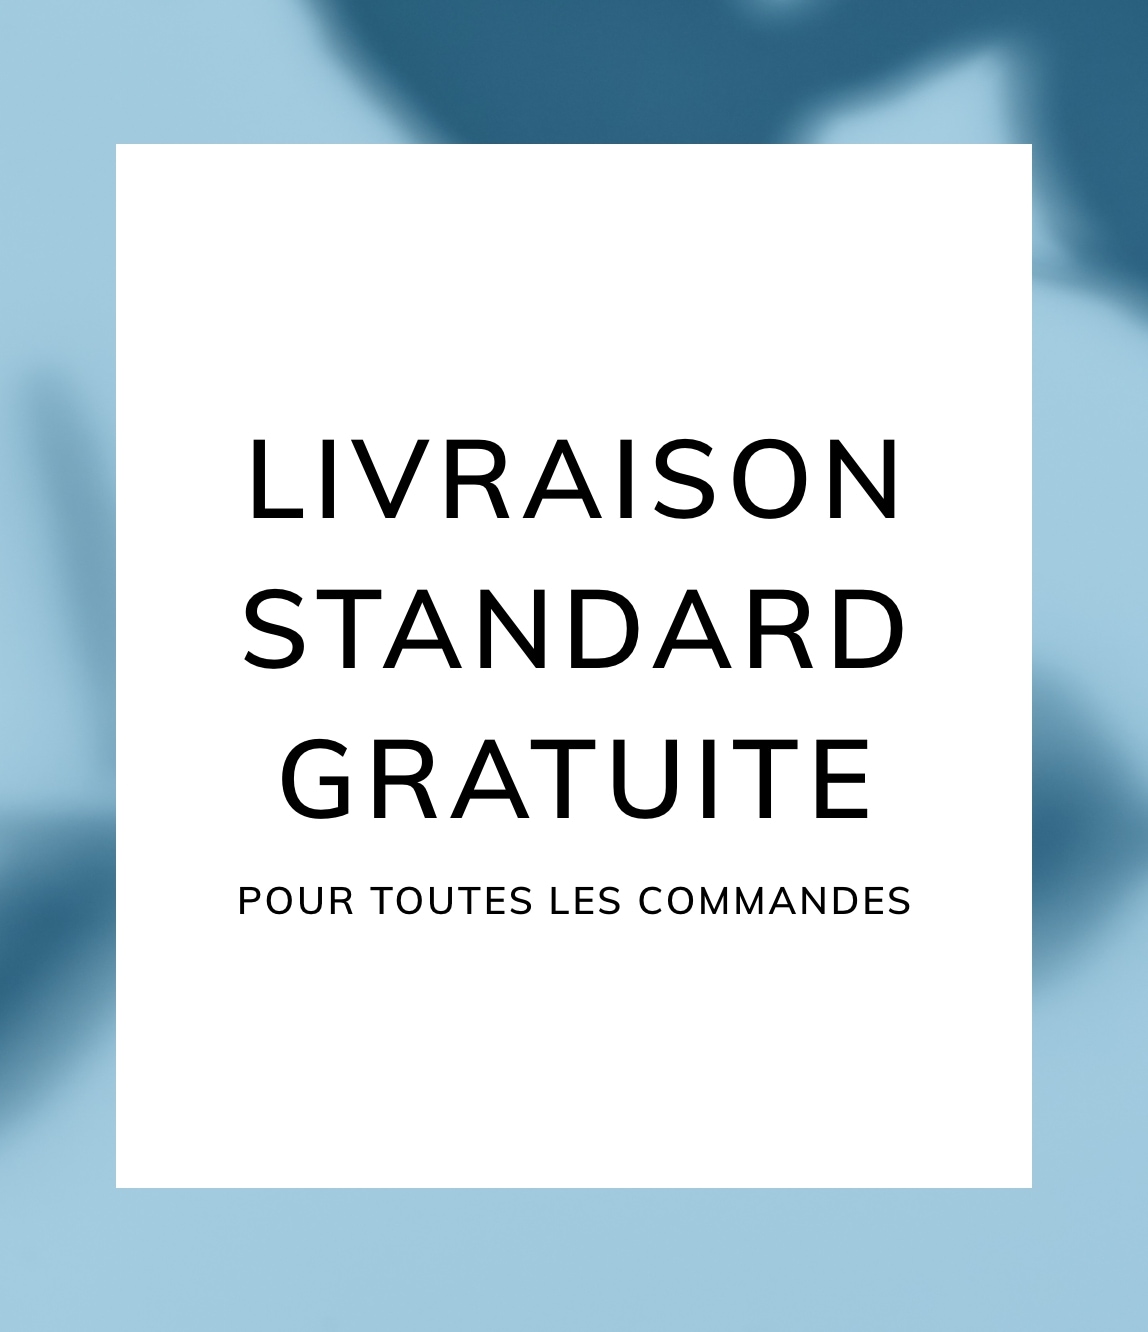 LIVRAISON STANDARD GRATUITE POUR TOUTES LES COMMANDES